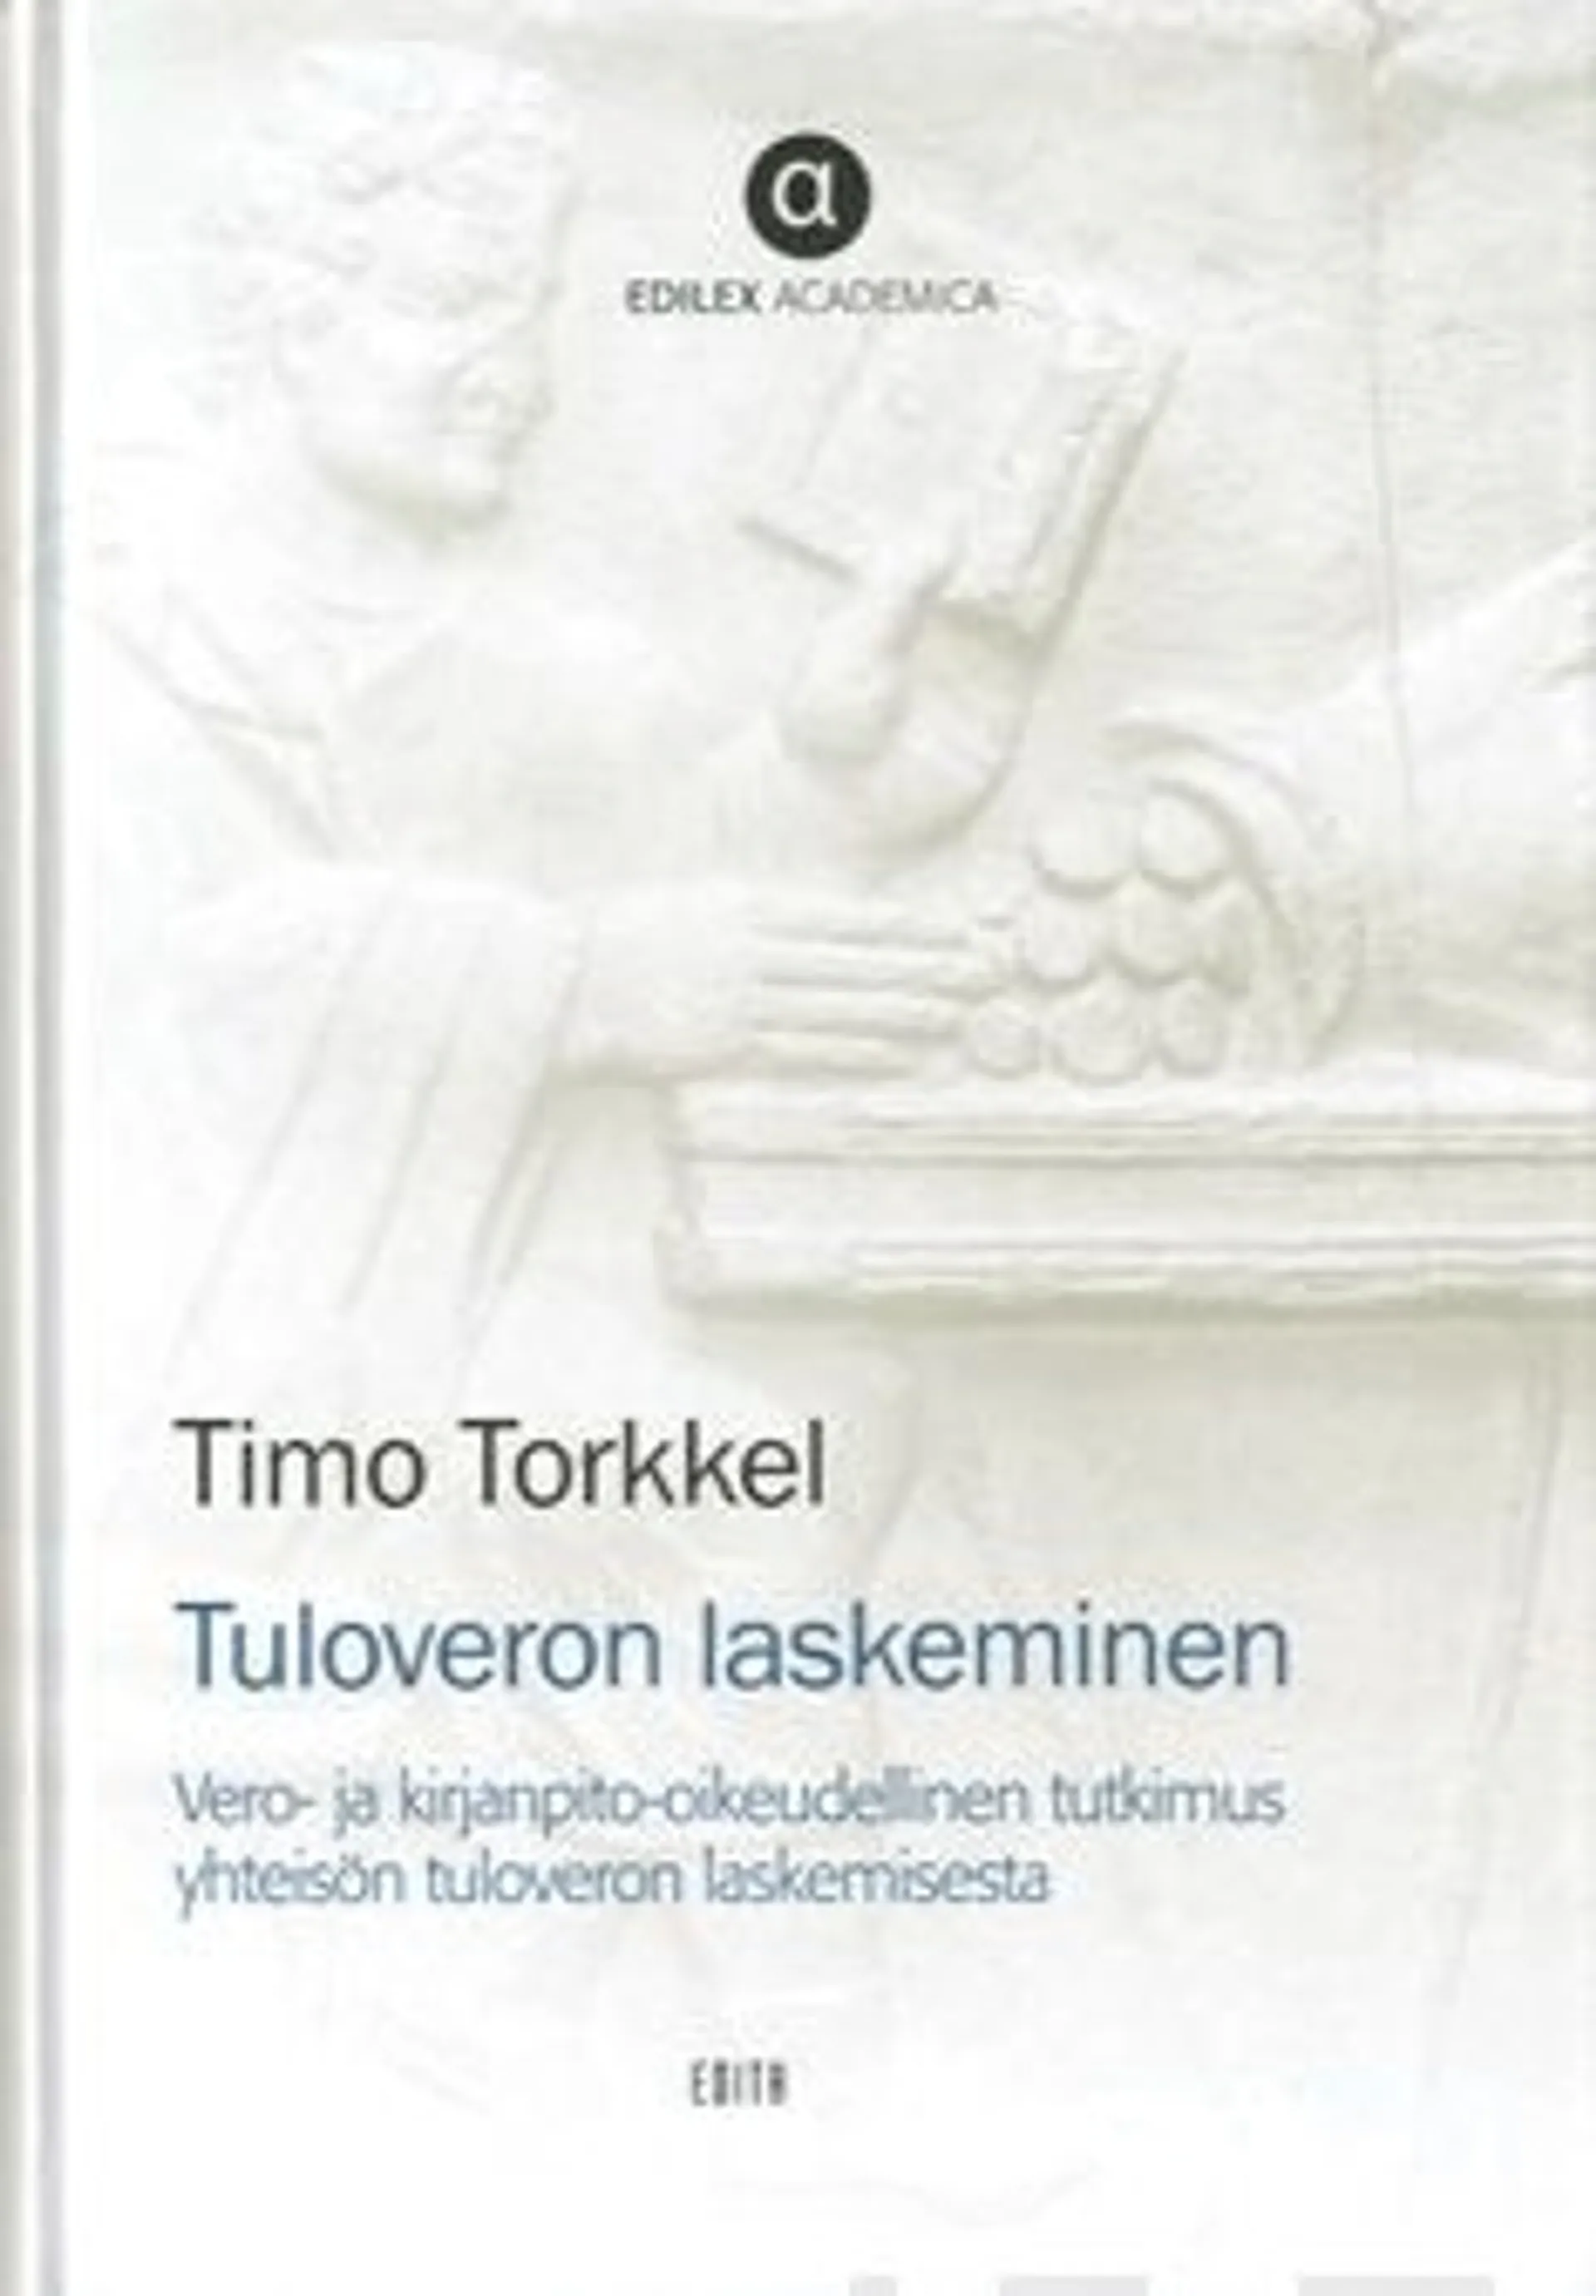 Torkkel, Tuloveron laskeminen - vero- ja kirjanpito-oikeudellinen tutkimus yhteisön tuloveron laskemisesta